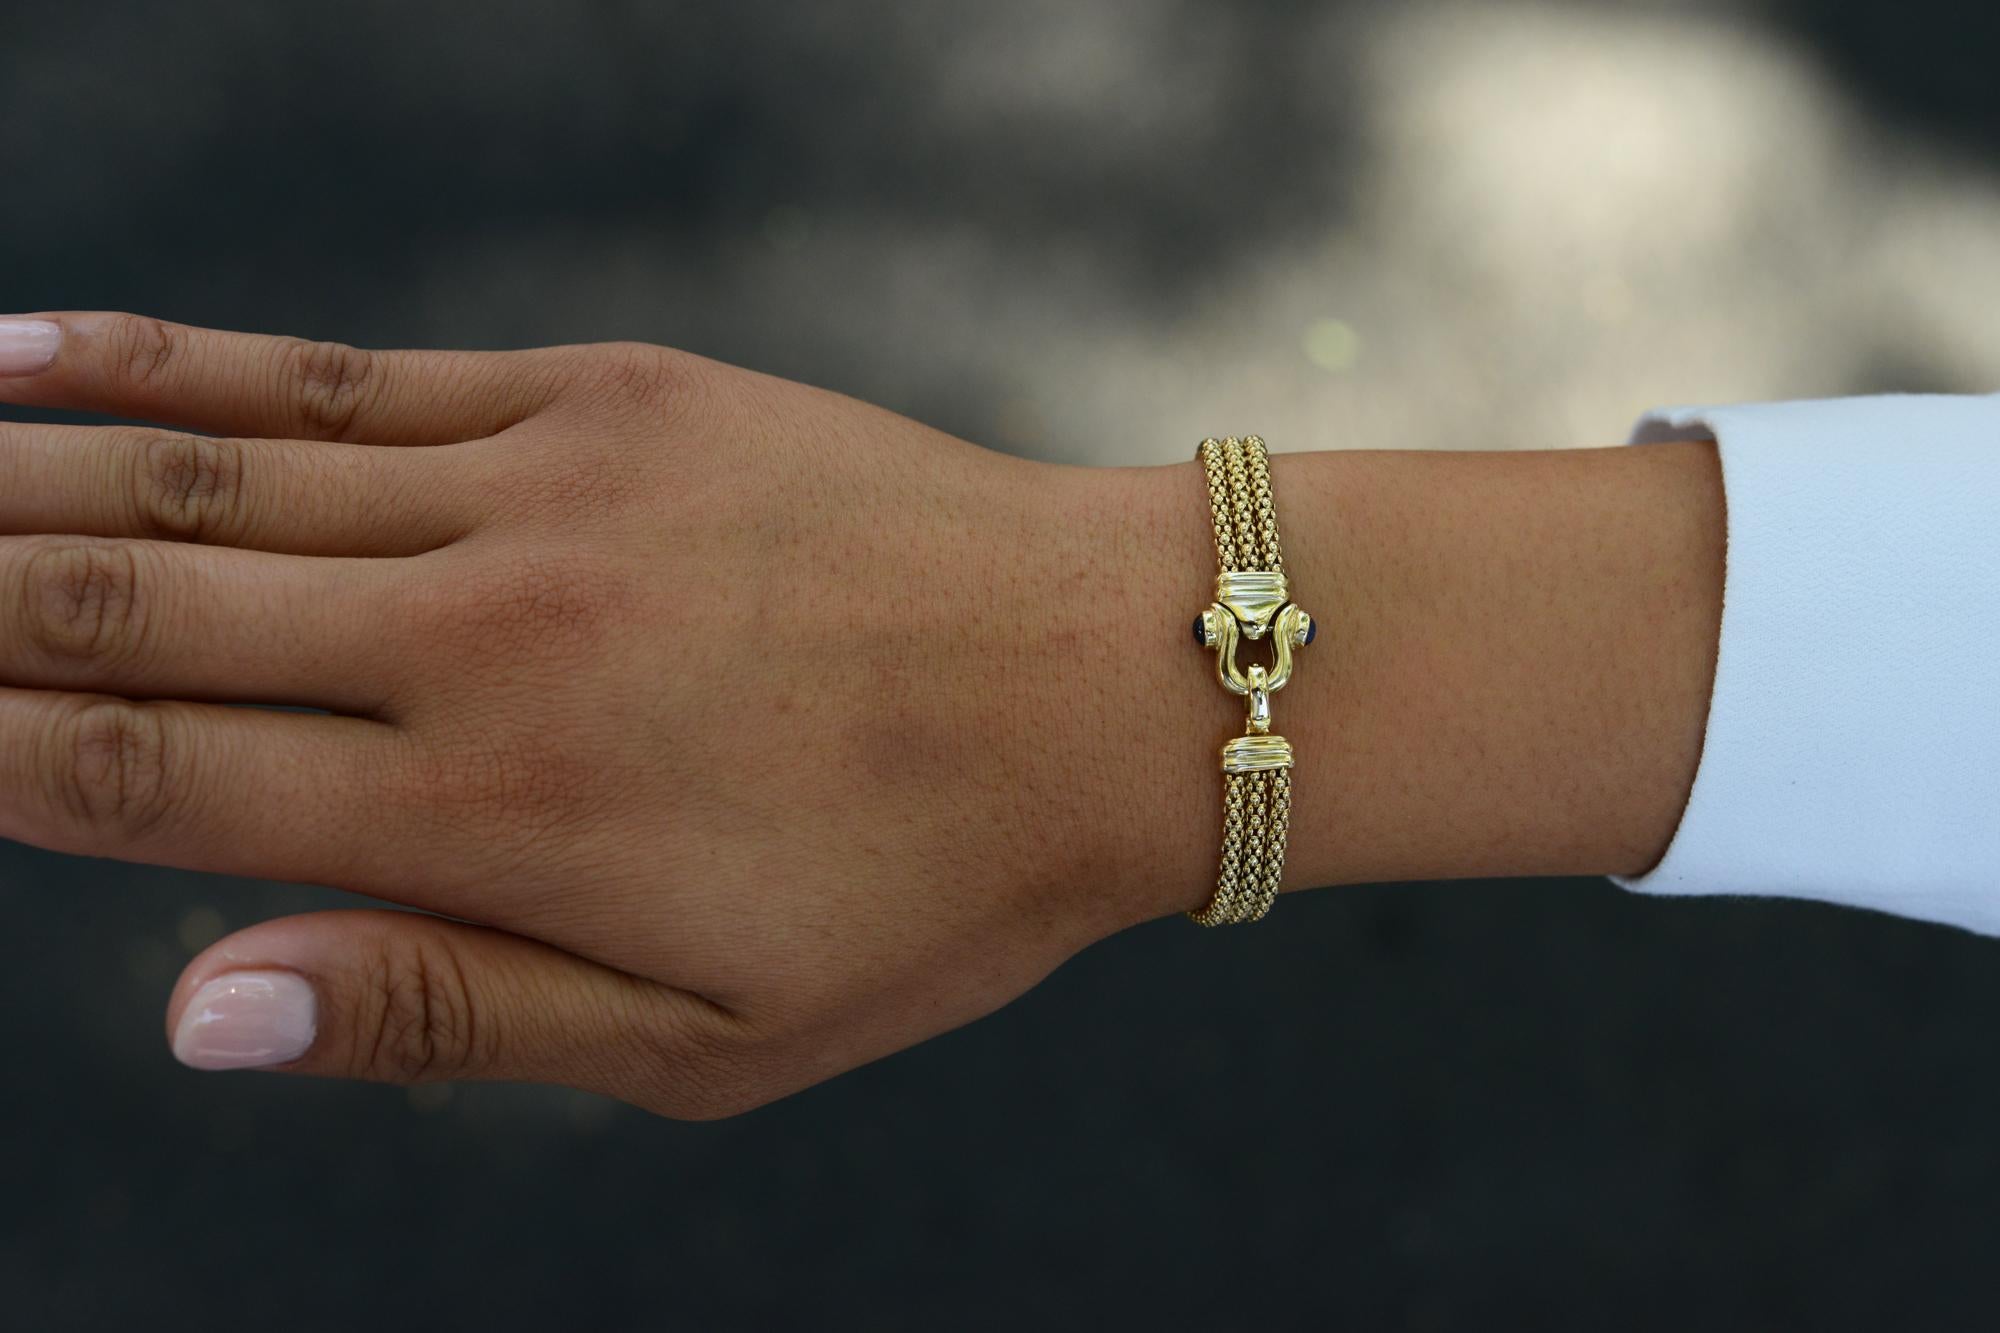 Ce bracelet italien contemporain et vintage des années 1980 est un accessoire discret mais élégant que vous voudrez porter tous les jours ! Fabriqué en or jaune 14 carats sur toute sa longueur, il est doté d'une boucle chic ornée de saphirs bleu